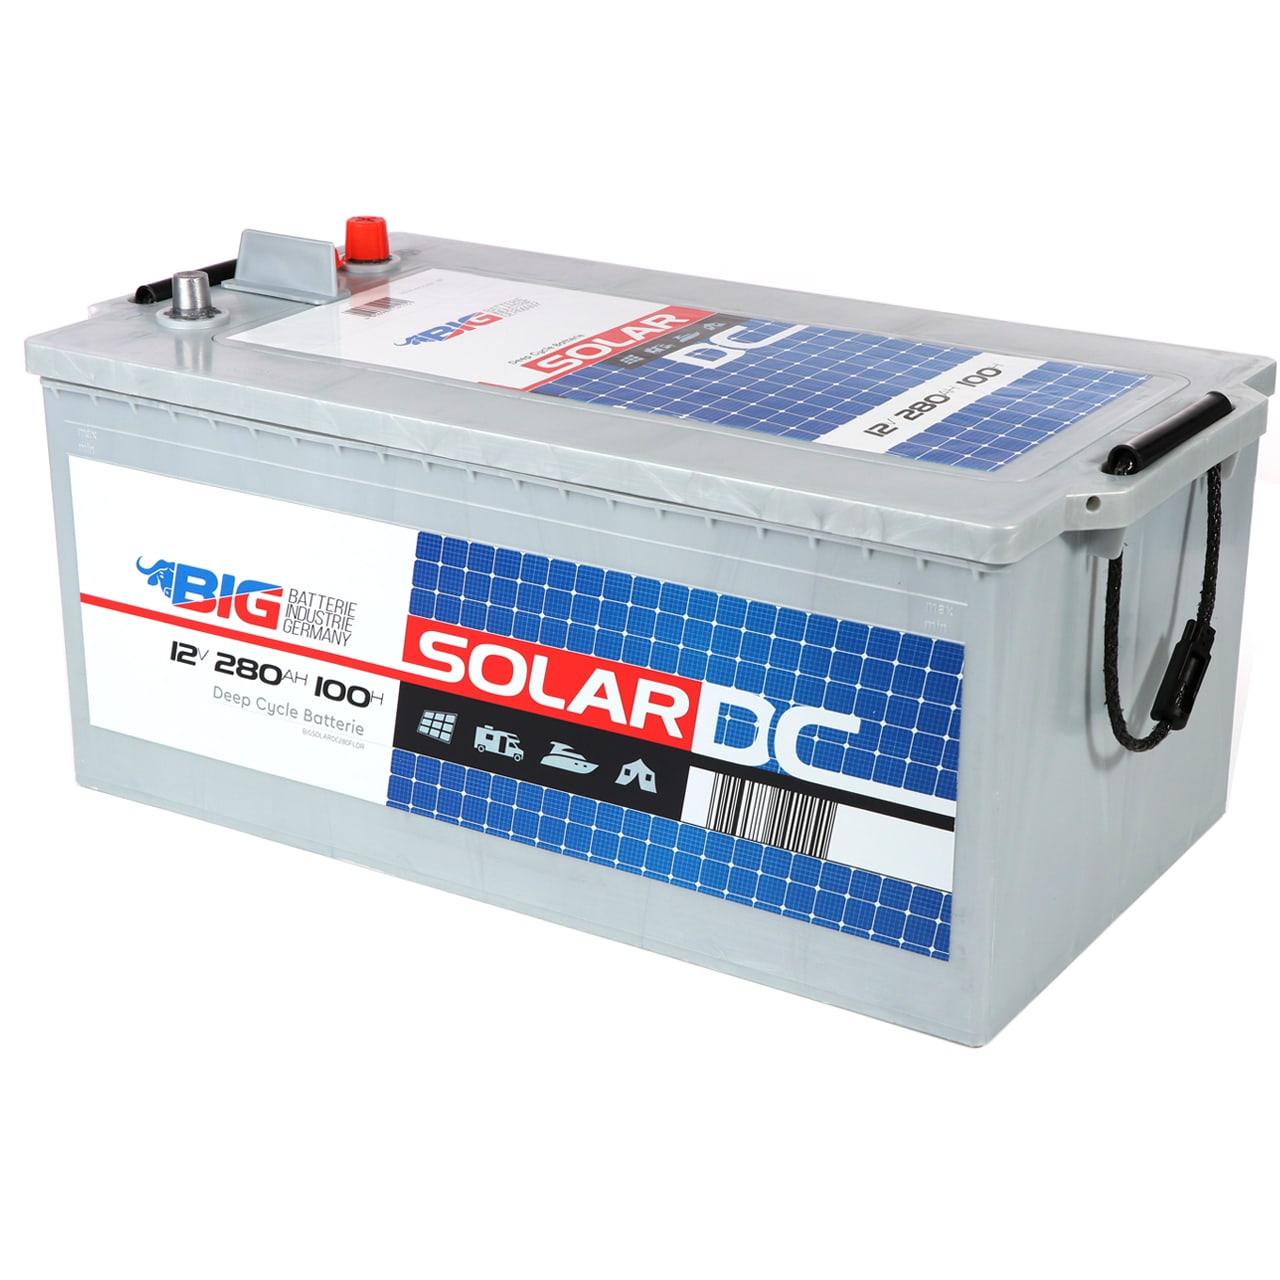 Solarbatterie 280Ah 12V EXAKT DCS Batterie für Wohnmobil ersetzt 260Ah, Solarbatterie  280Ah 12V EXAKT DCS Wohnmobilbatterie Batterie ersetzt 260Ah